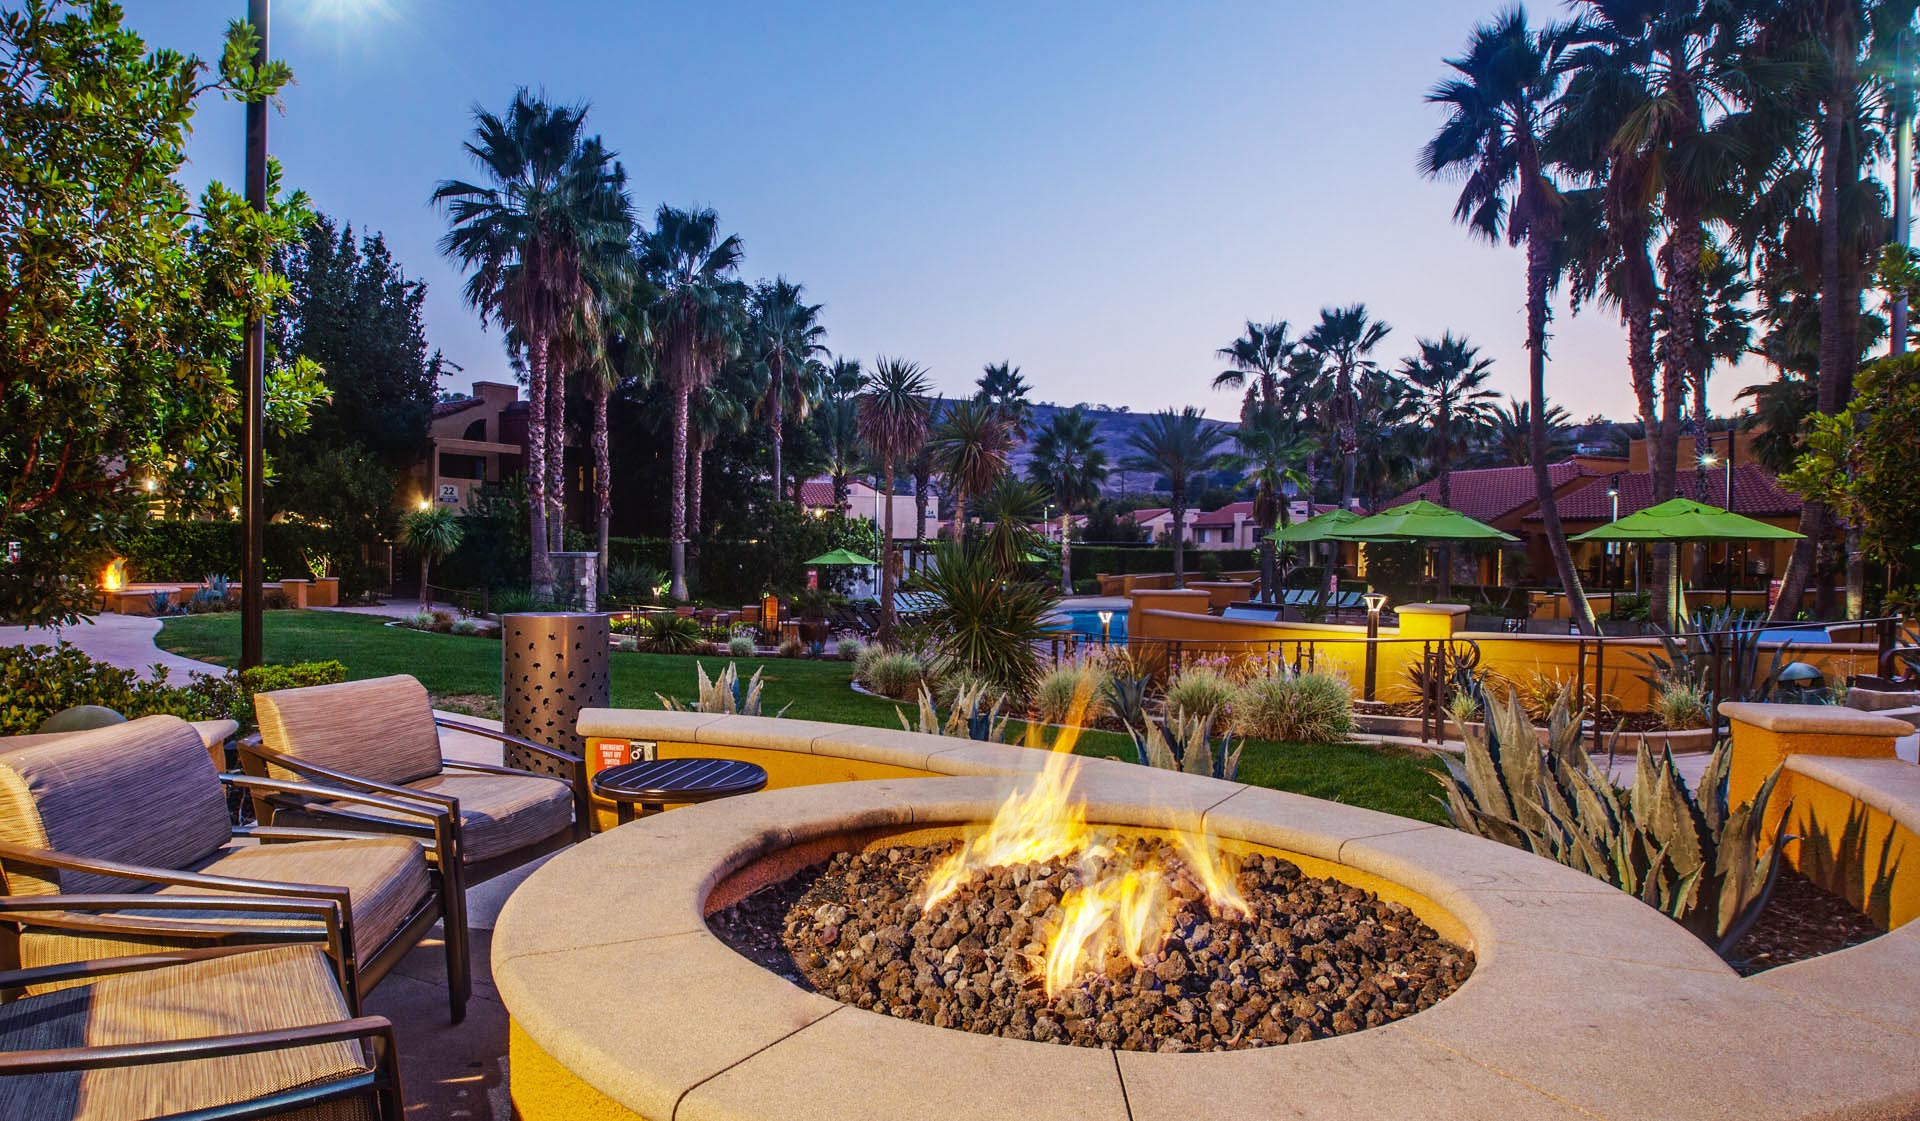 Malibu Canyon Apartments - Calabasas, CA - Outdoor Fireplace and Patio